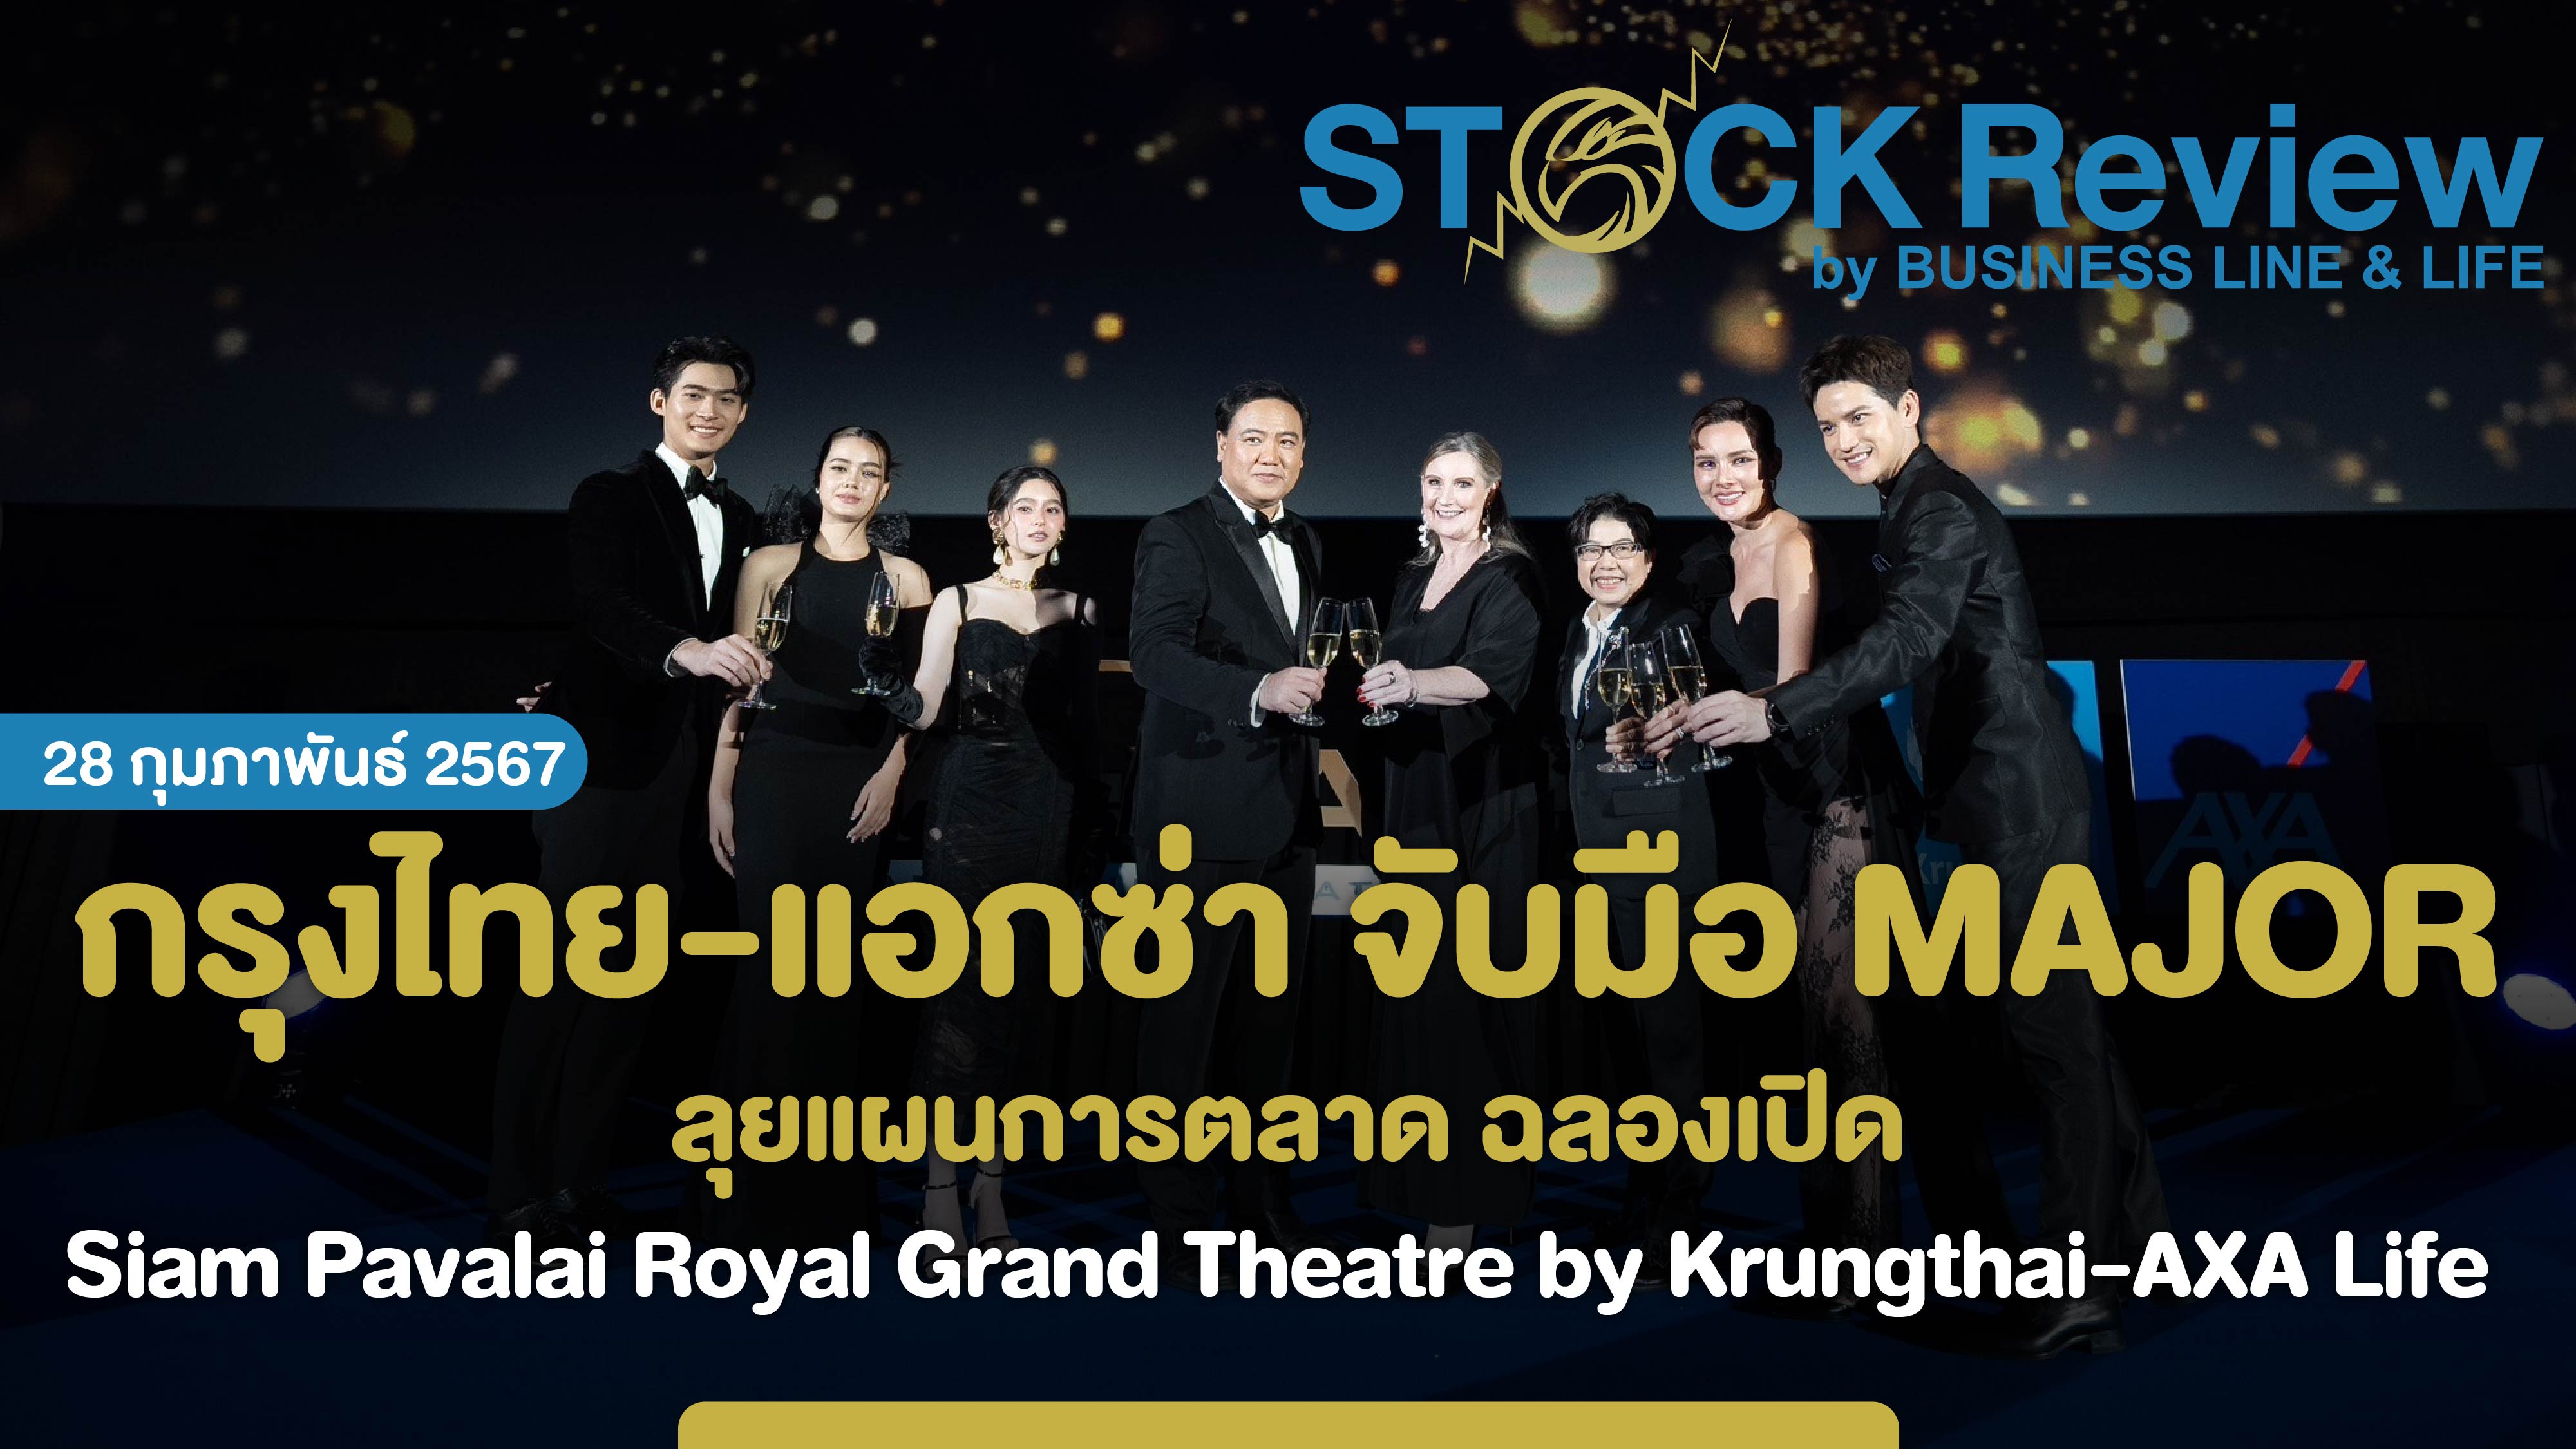 กรุงไทย-แอกซ่า จับมือ MAJOR ลุยแผนการตลาด ฉลองเปิด Siam Pavalai Royal Grand Theatre by Krungthai-AXA Life